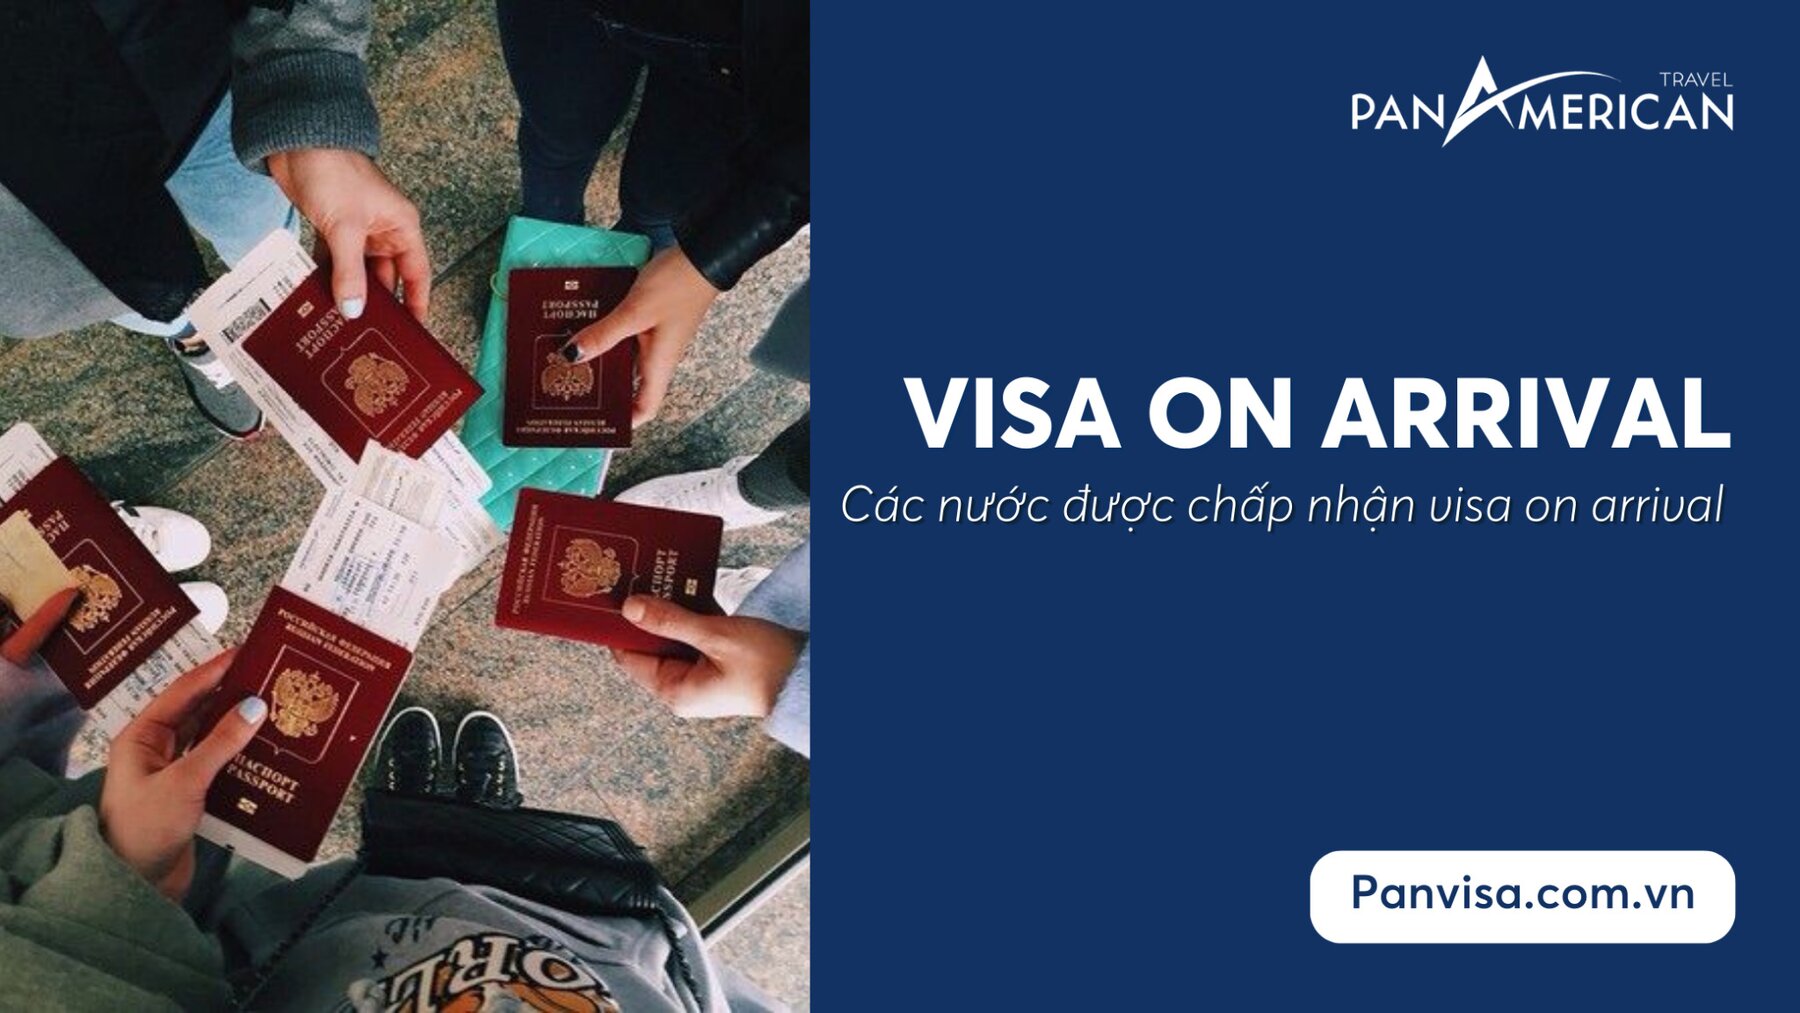 Các nước trên thế giới chấp nhận visa on arrival cho công dân Việt Nam